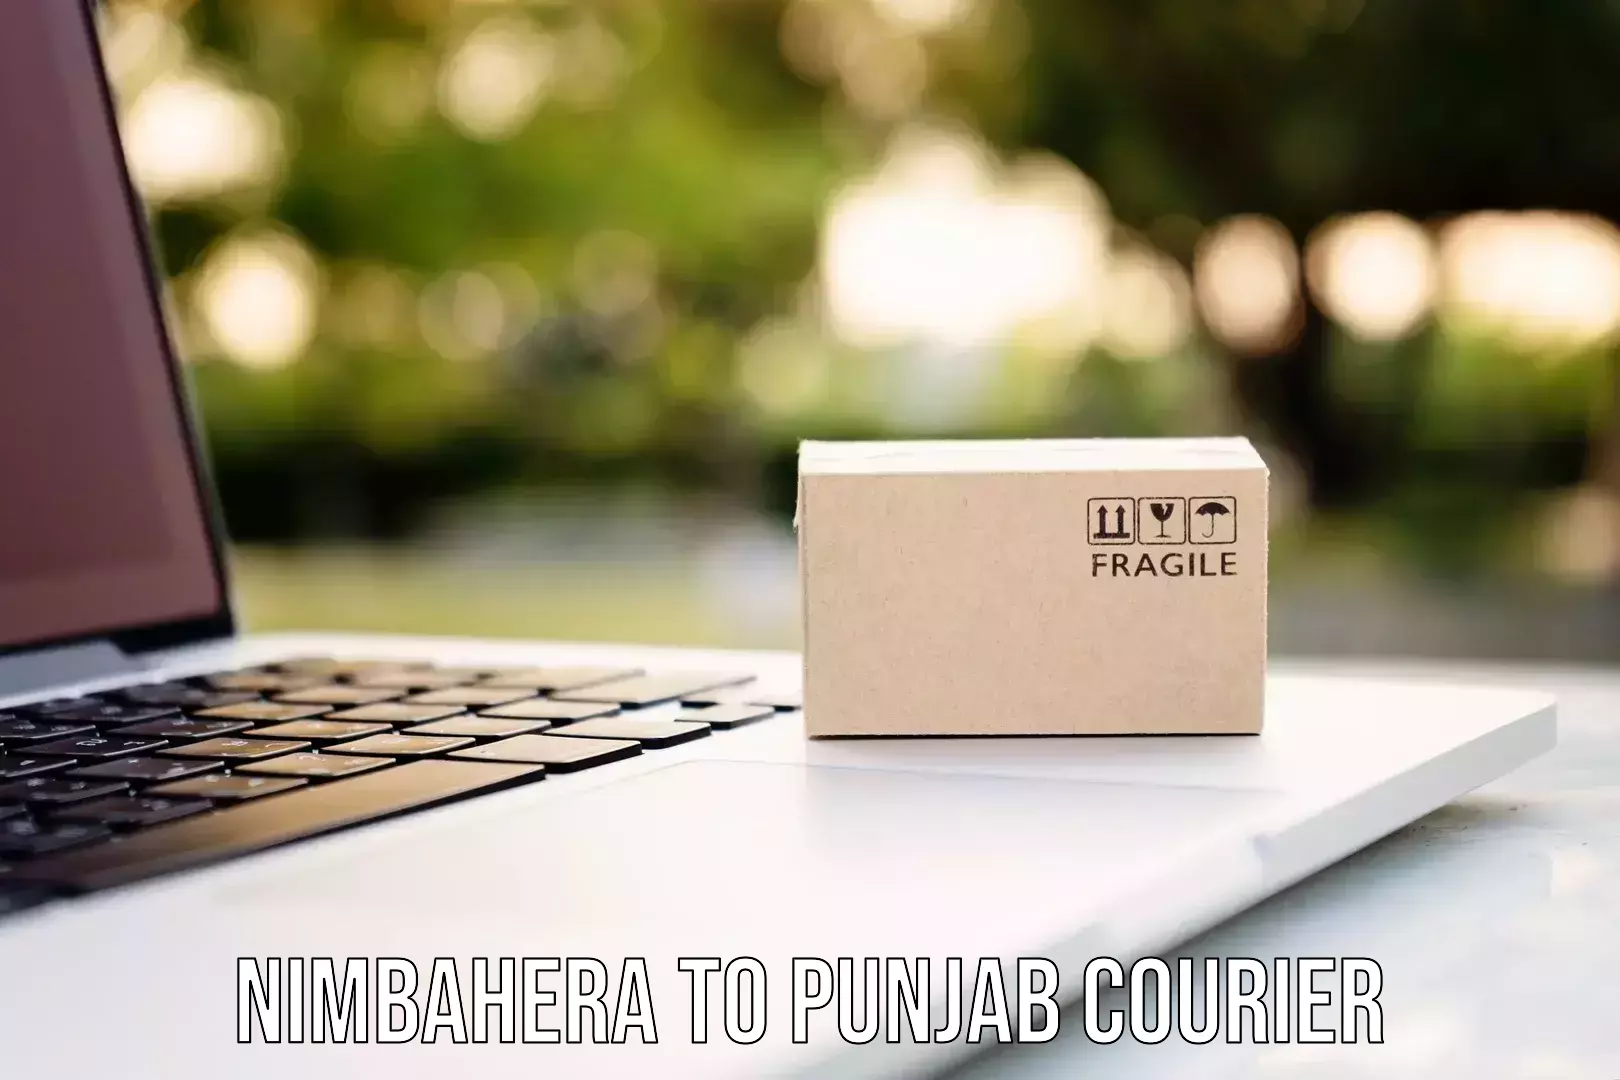 Global delivery options Nimbahera to Central University of Punjab Bathinda